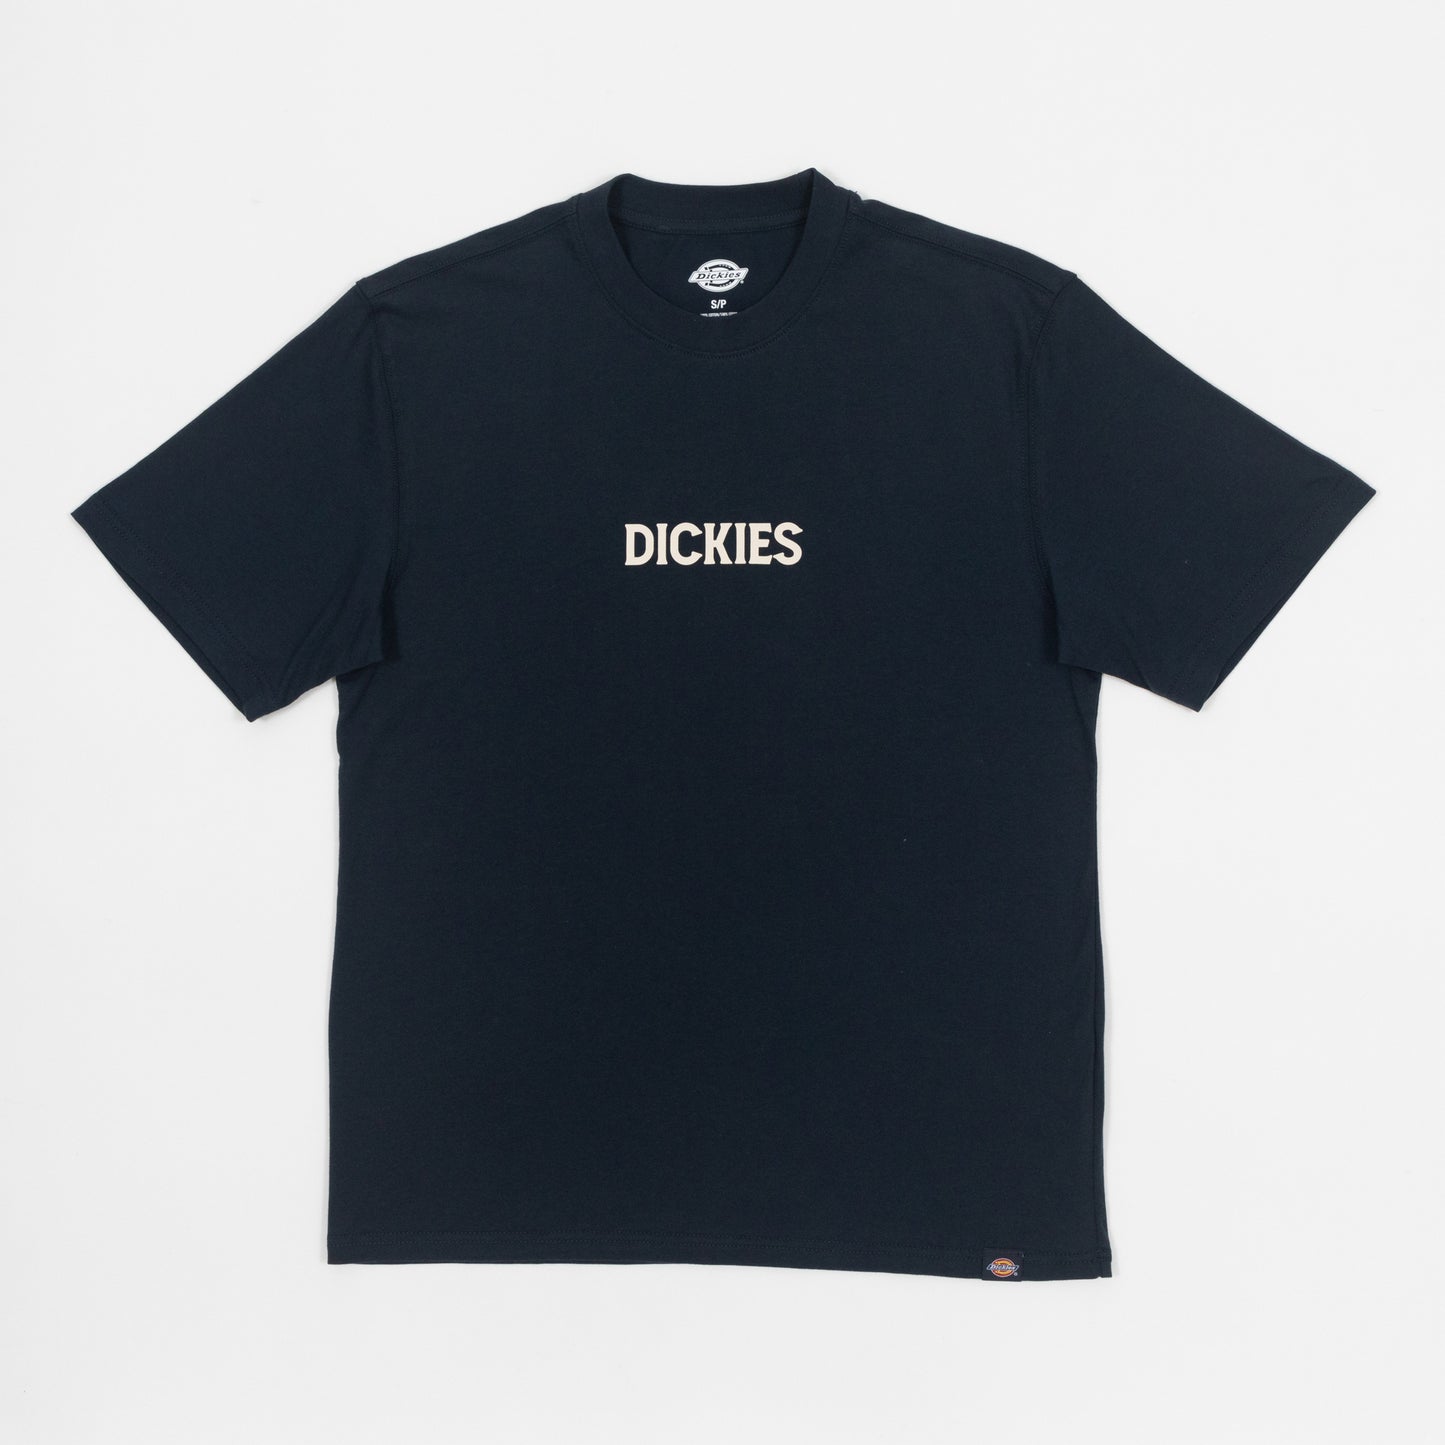 DICKIES Patrick Springs T-Shirt in NAVY